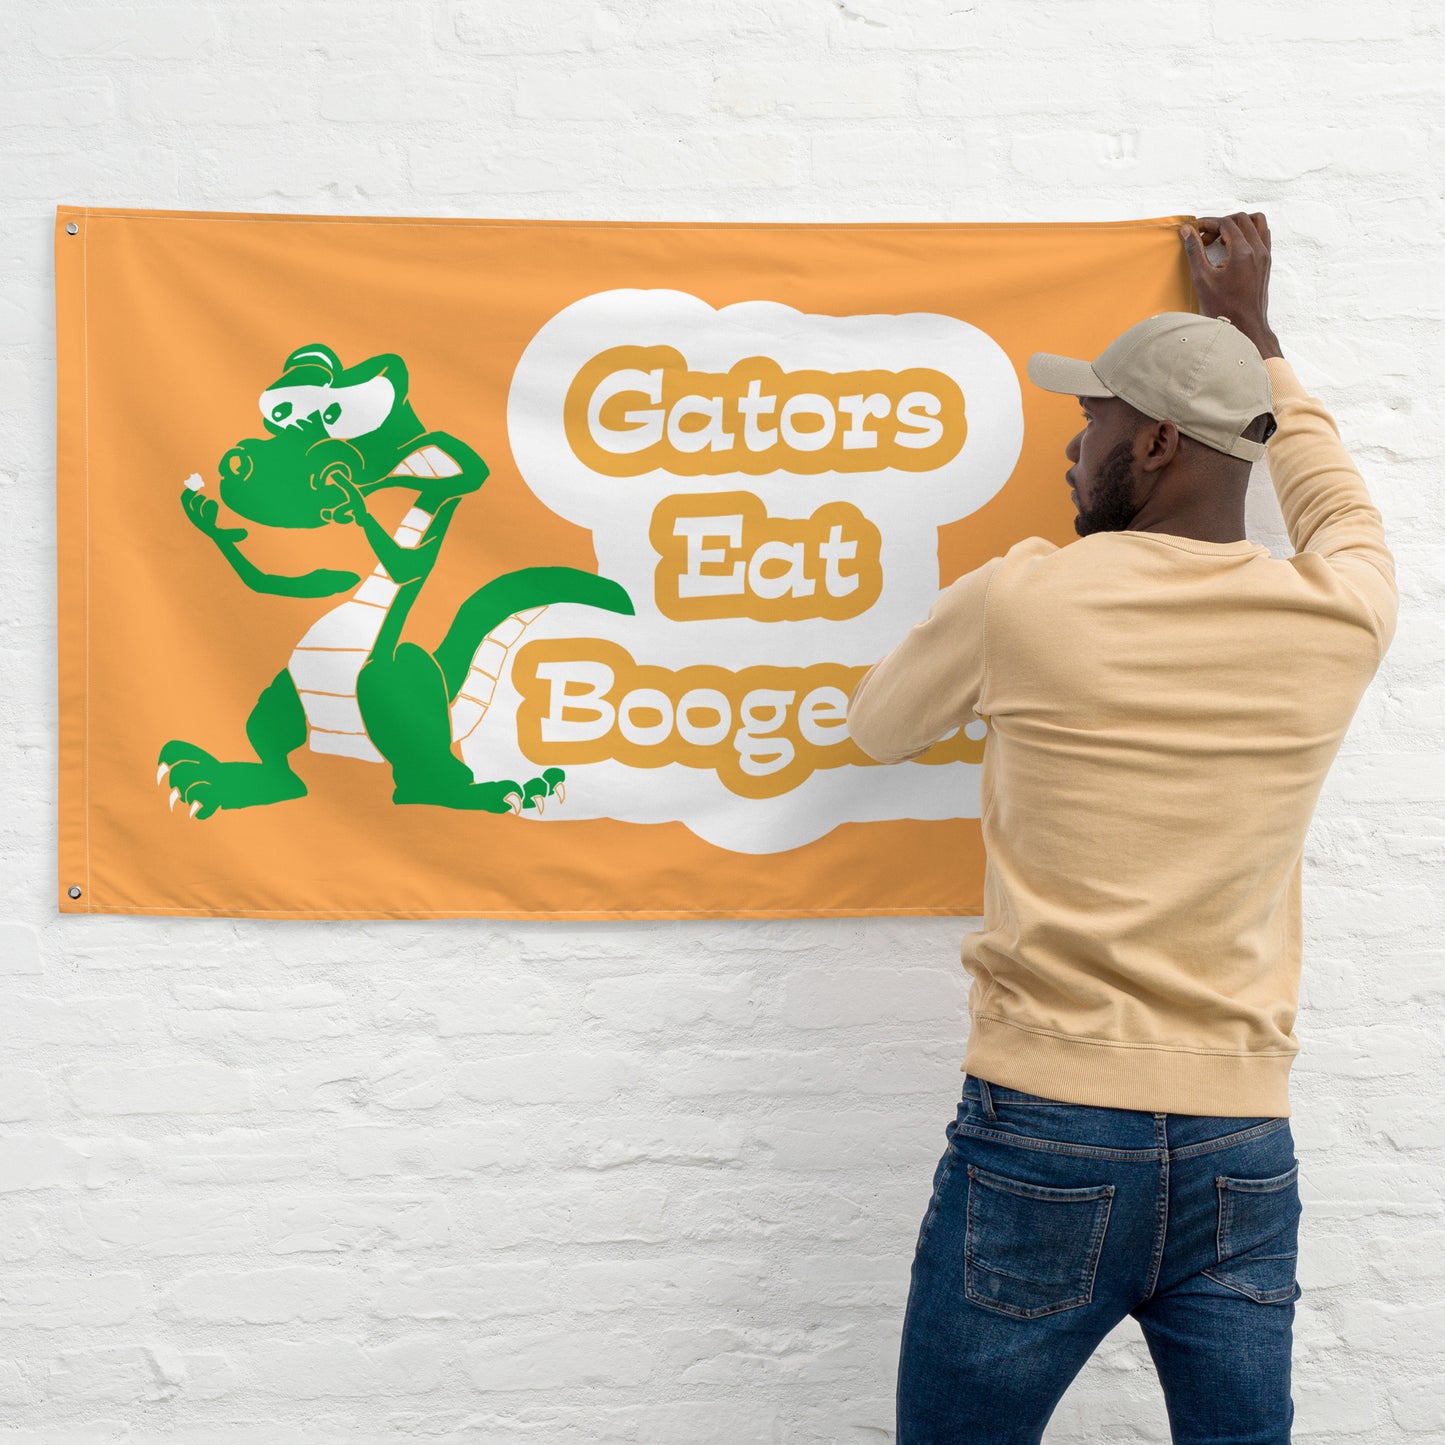 Gators Eat Boogers Flags